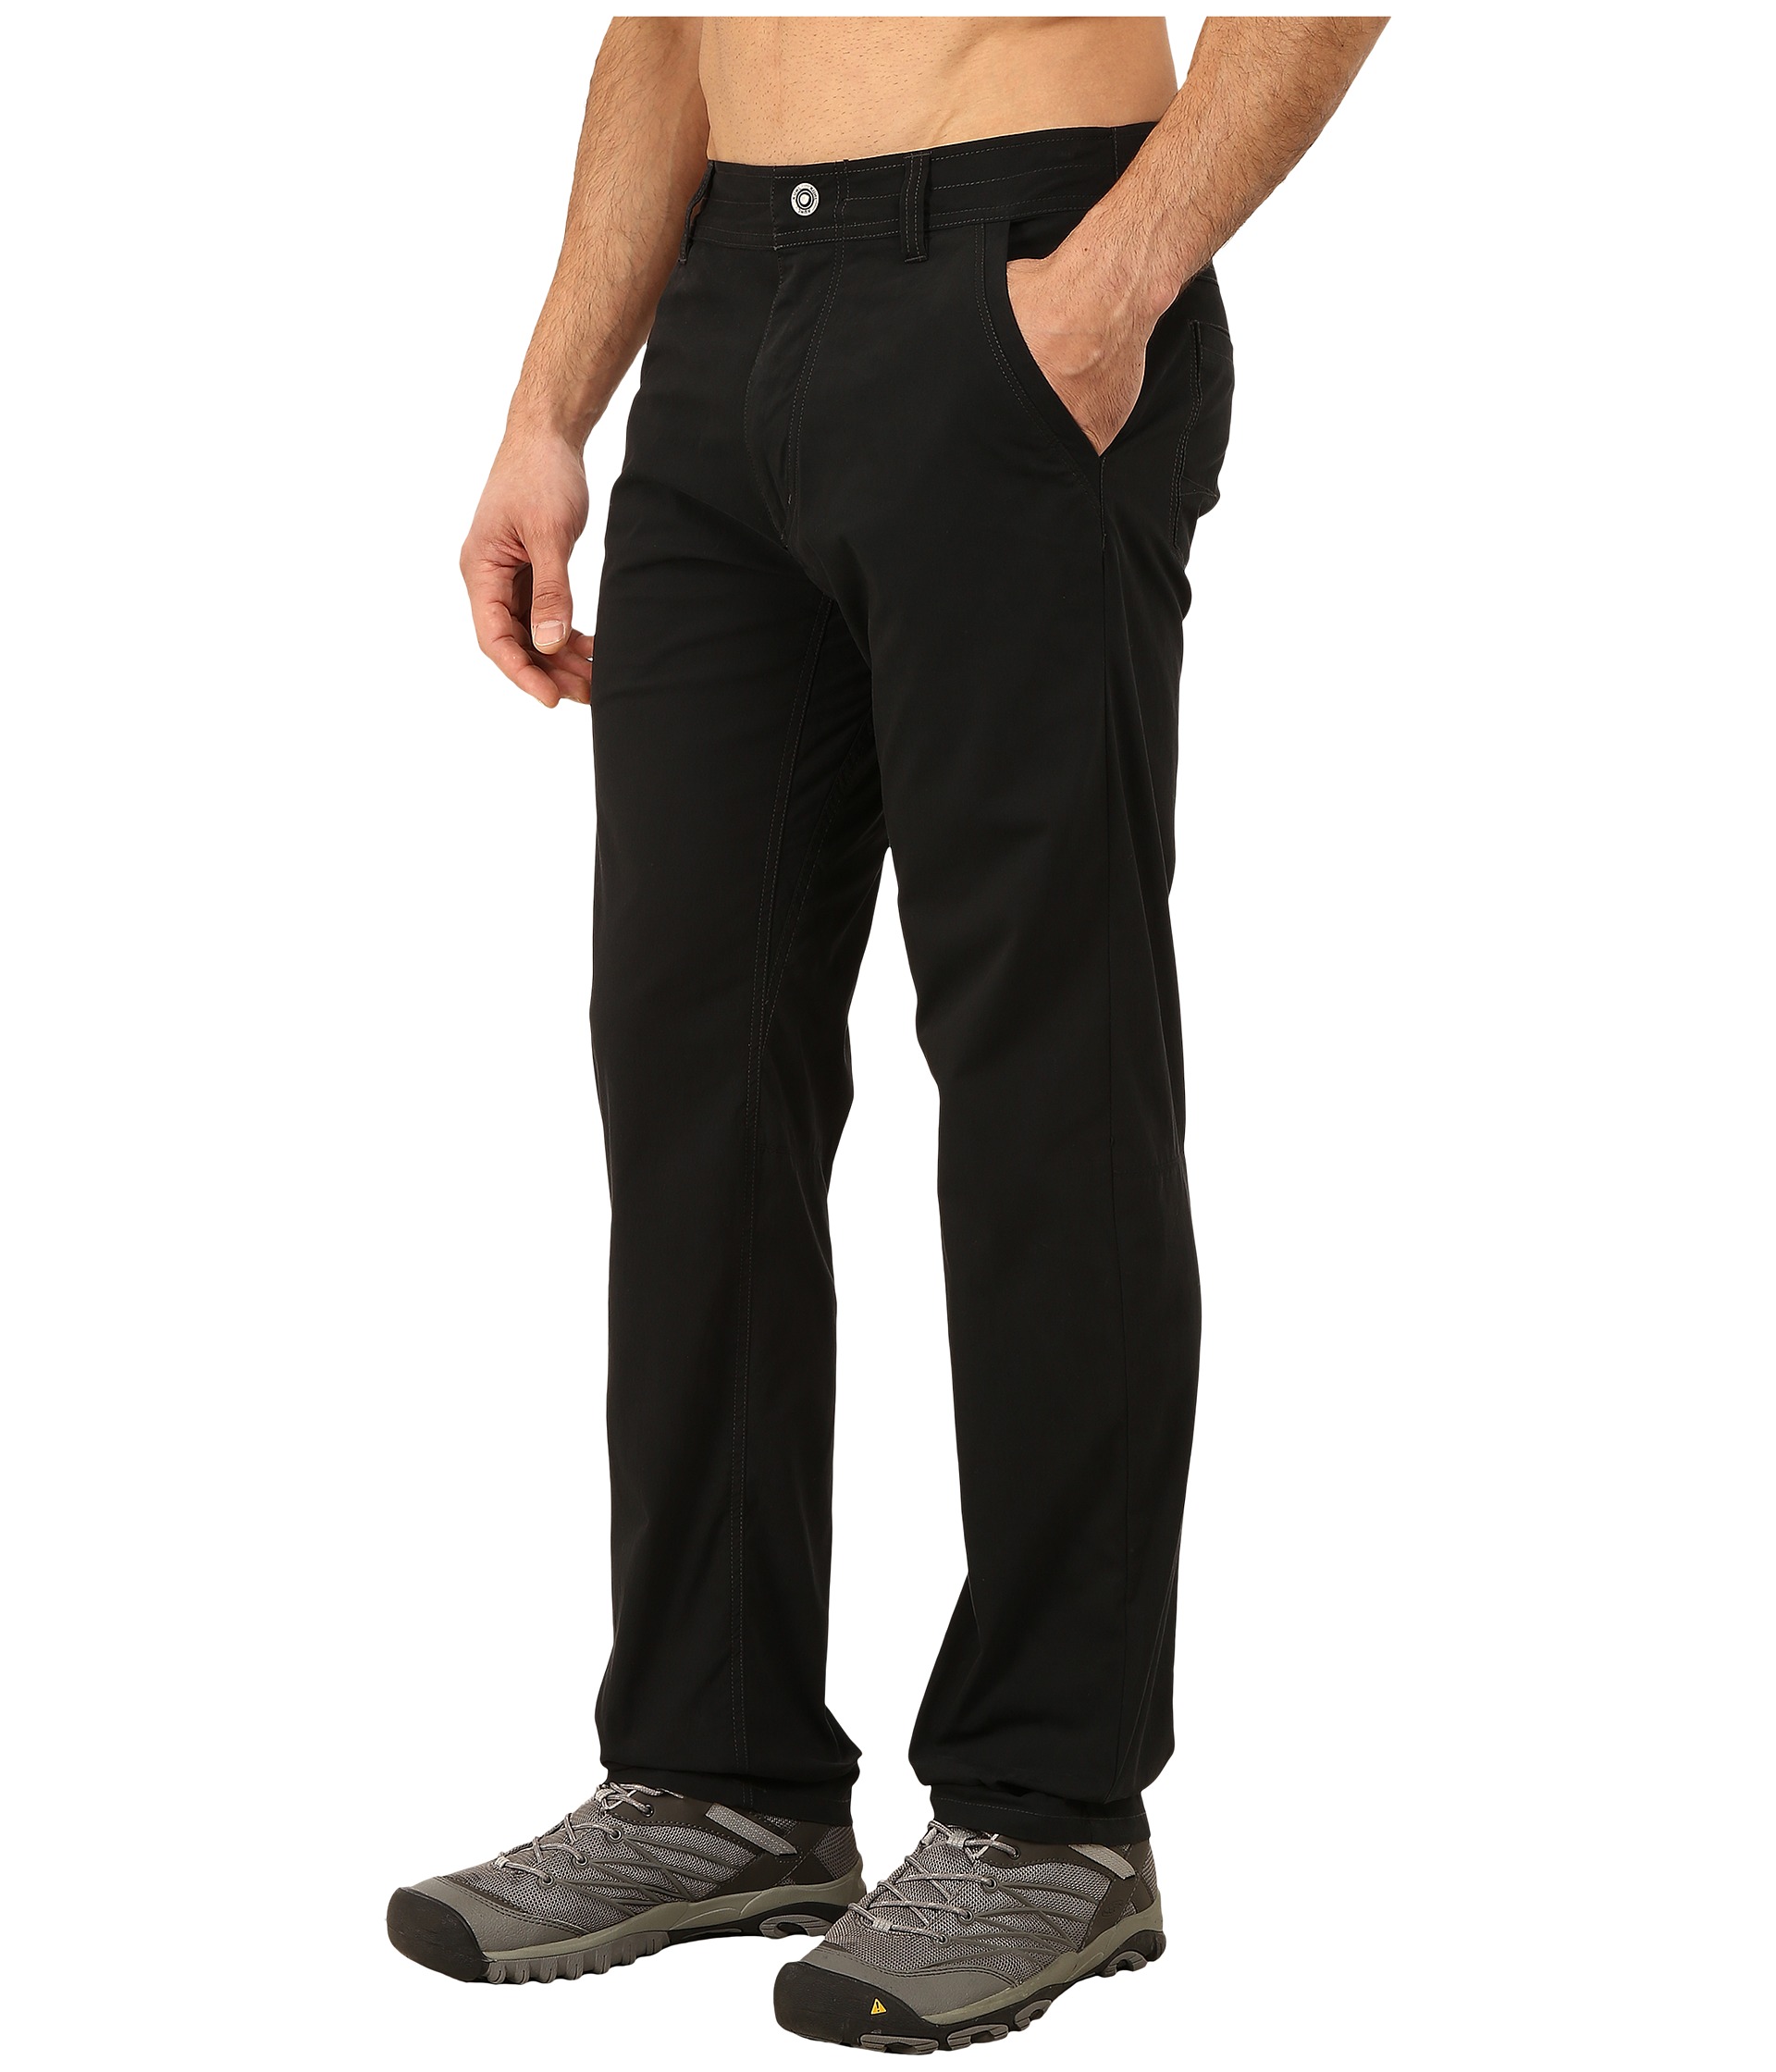 KUHL Slax™ Pants at Zappos.com